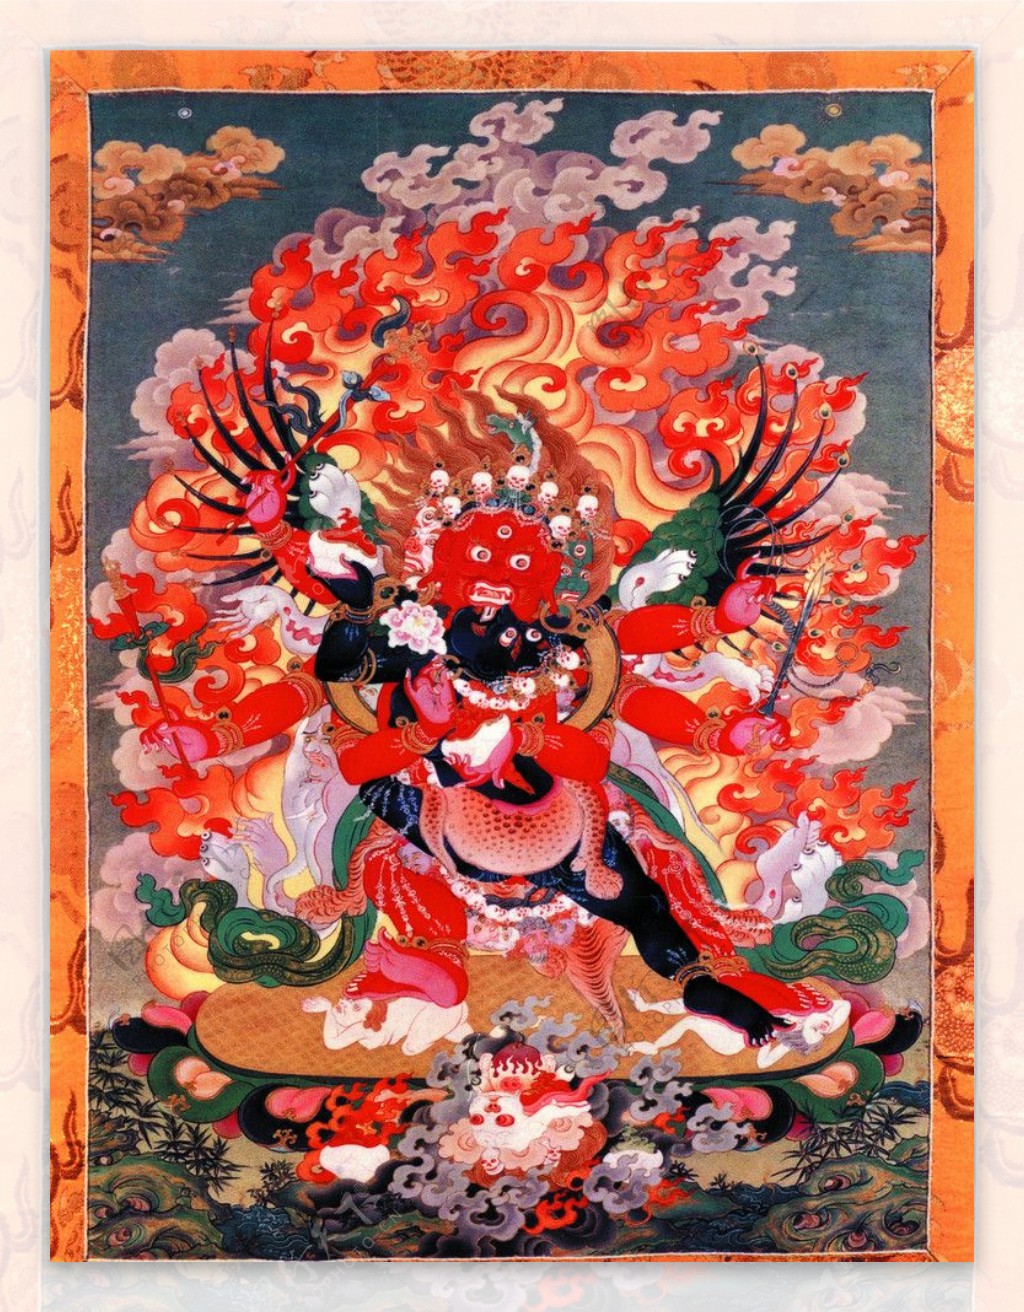 西藏日喀则唐卡佛教佛法佛经佛龛唐卡全大藏族文化07图片